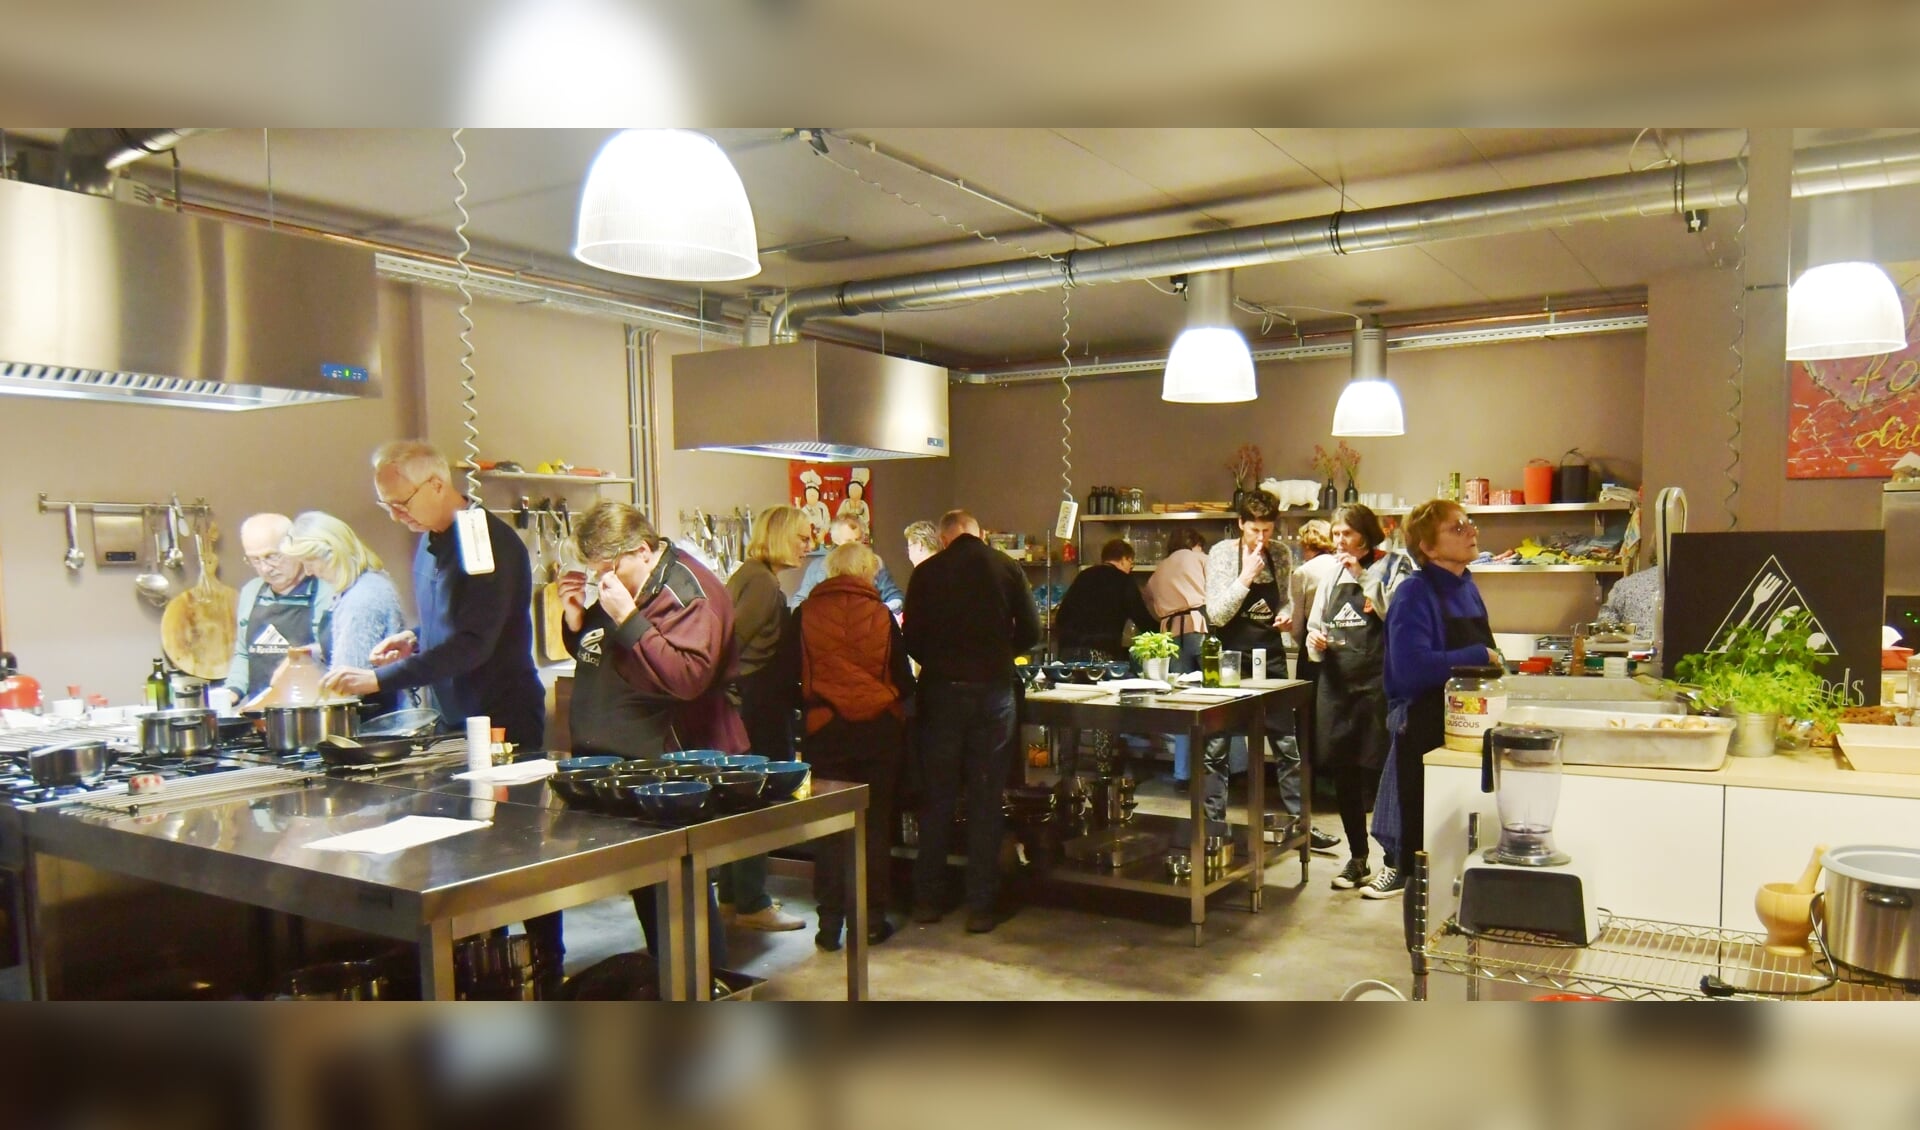 De cursus Koken vol verrassingen voor beginners en gevorderden wordt gehouden in de Kookloods van Nynke Dolphijn. Foto: PR